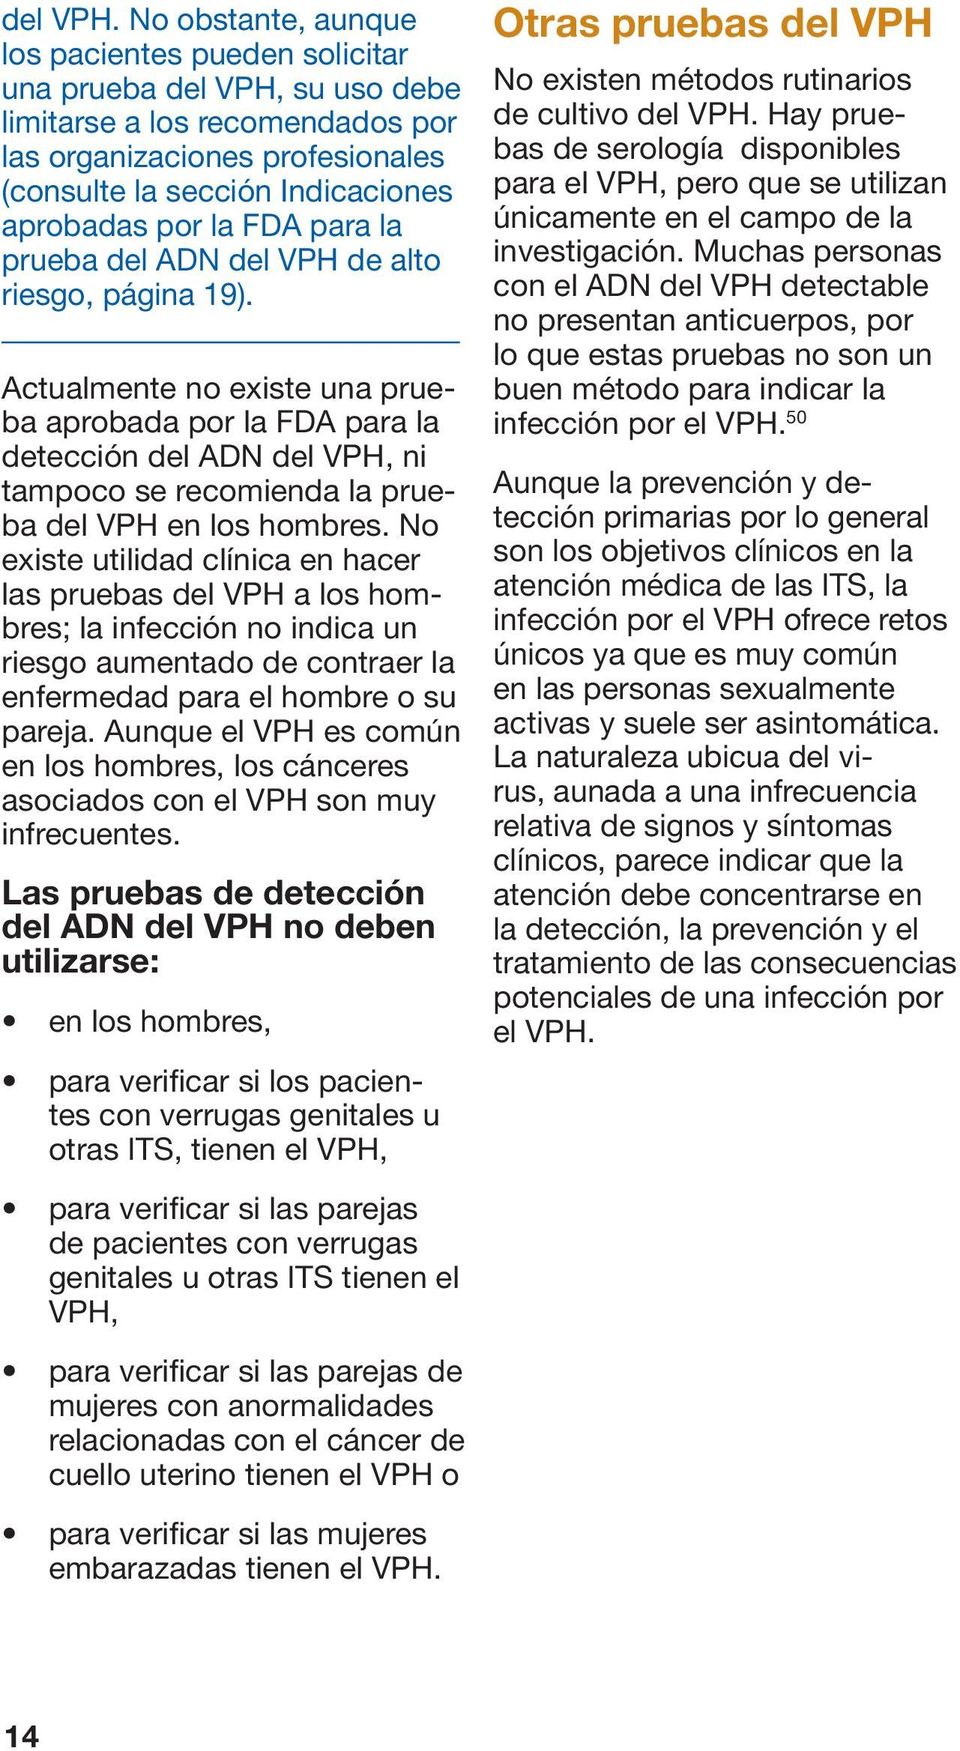 FDA para la prueba del ADN del VPH de alto riesgo, página 19).